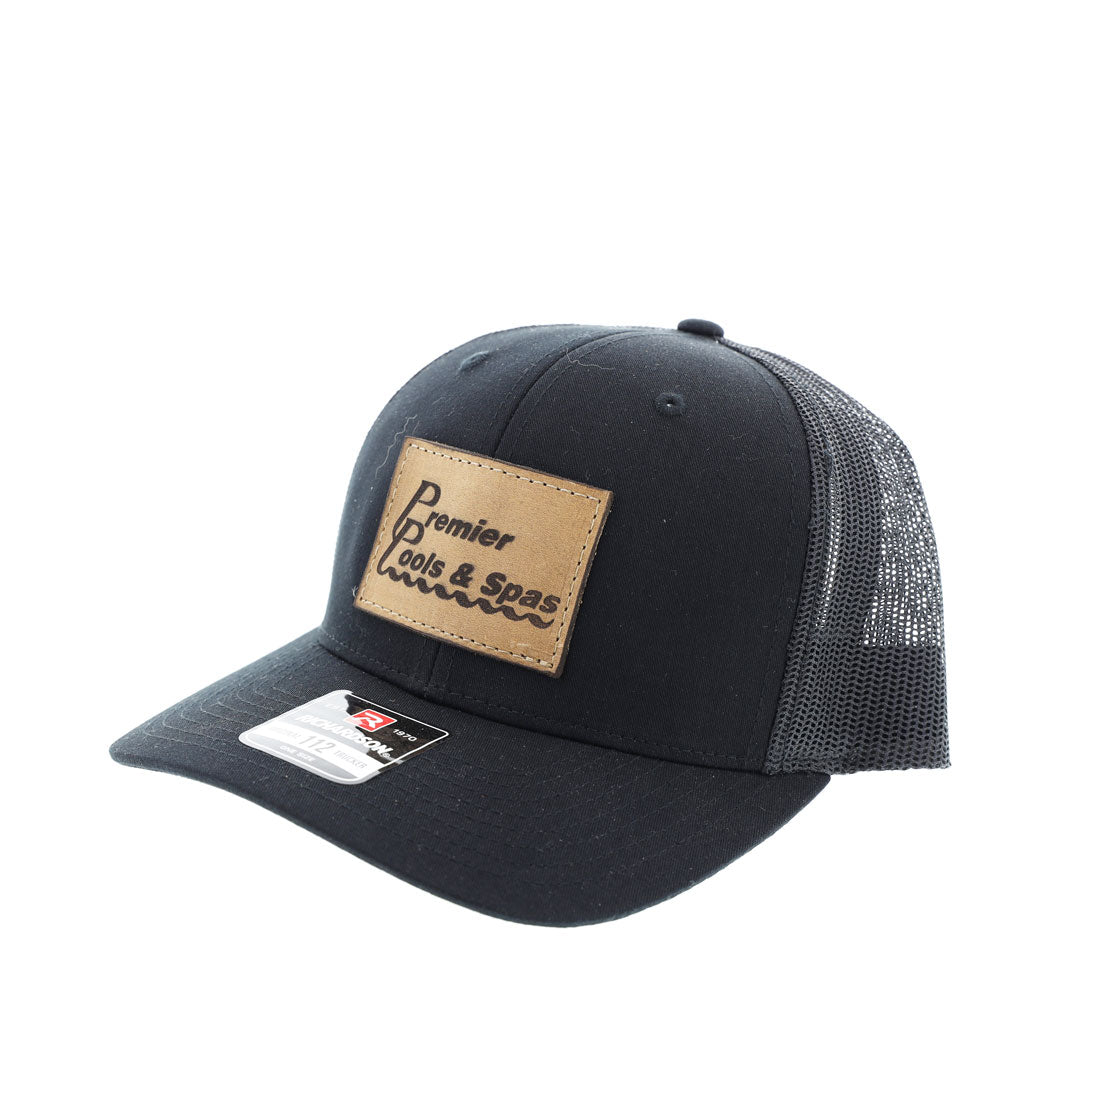 Premier│Build - Leather Patch Hats – Premier Store